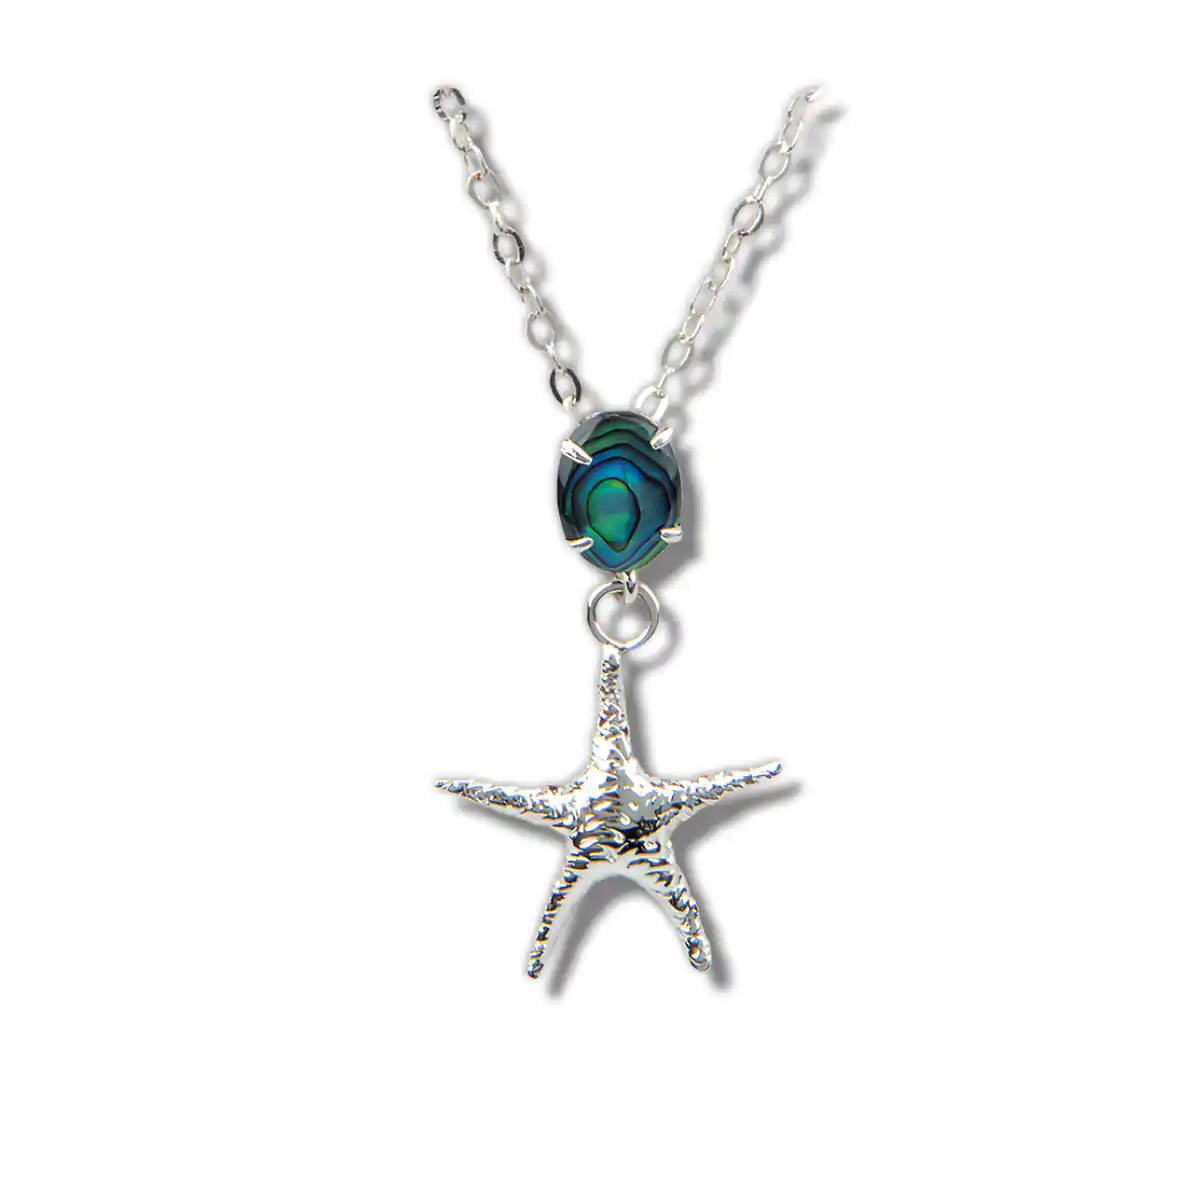 Glacier pearle starfish necklace